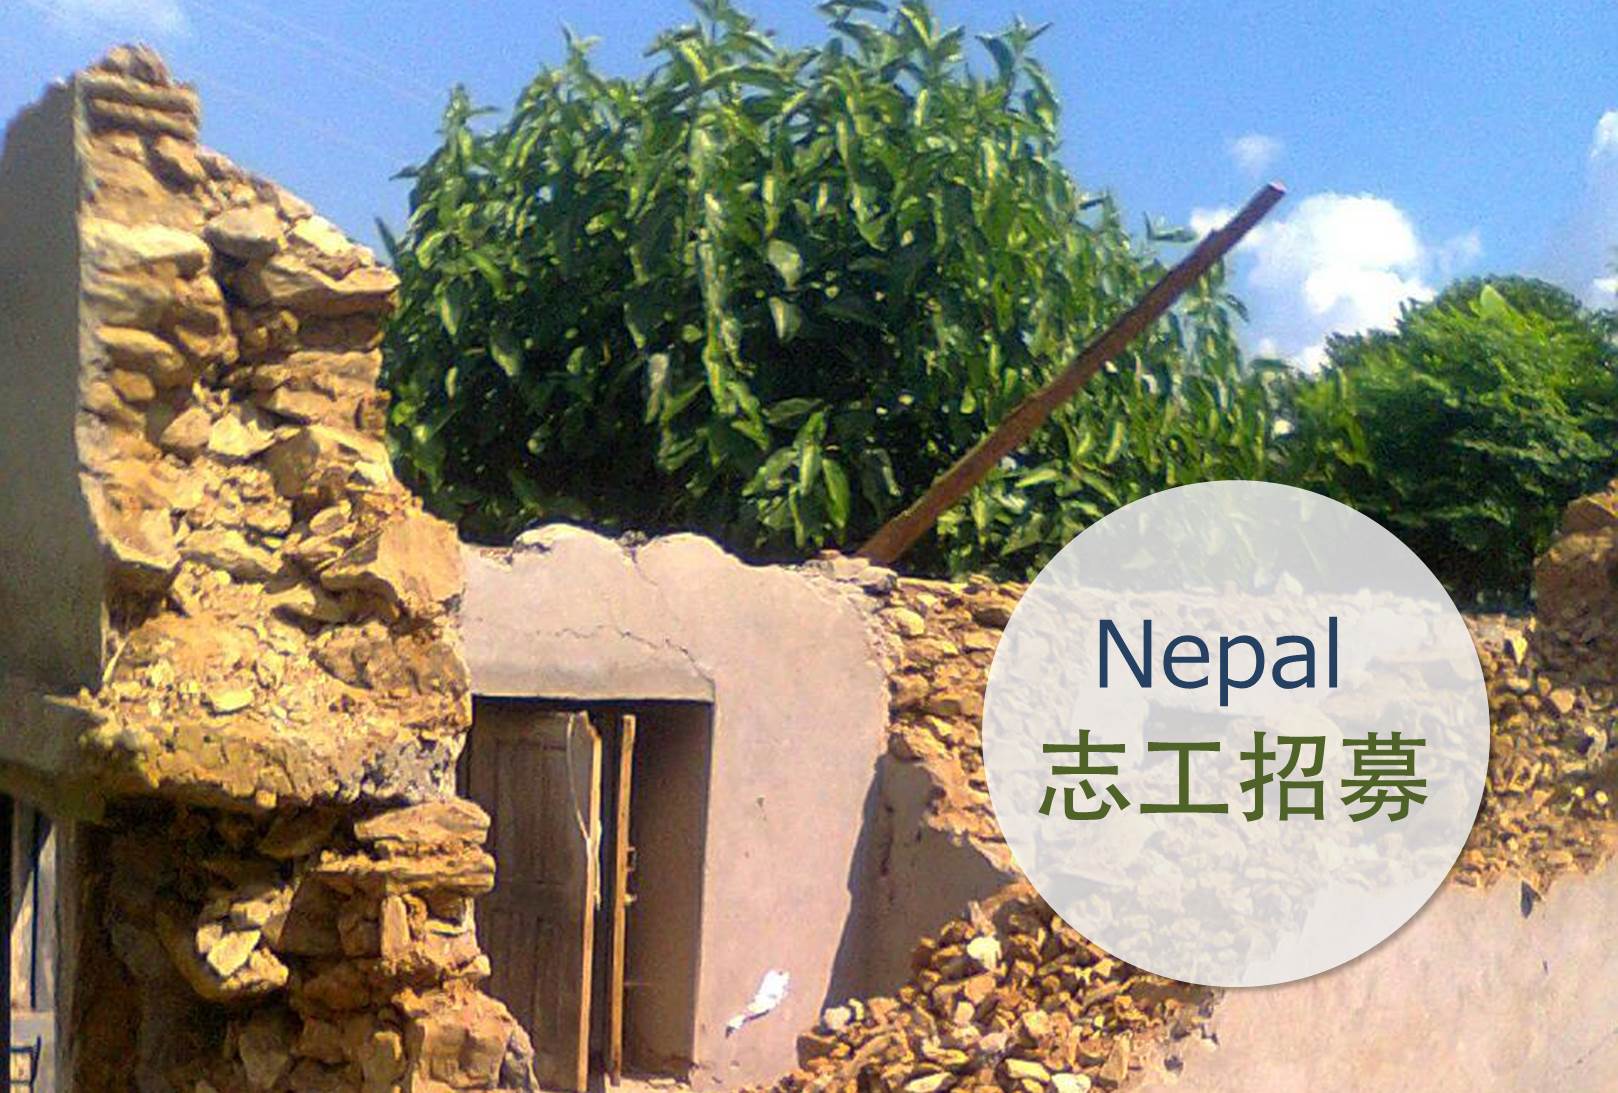 105年度海外服務工作團尼泊爾衛生站重建計畫專案志工招募